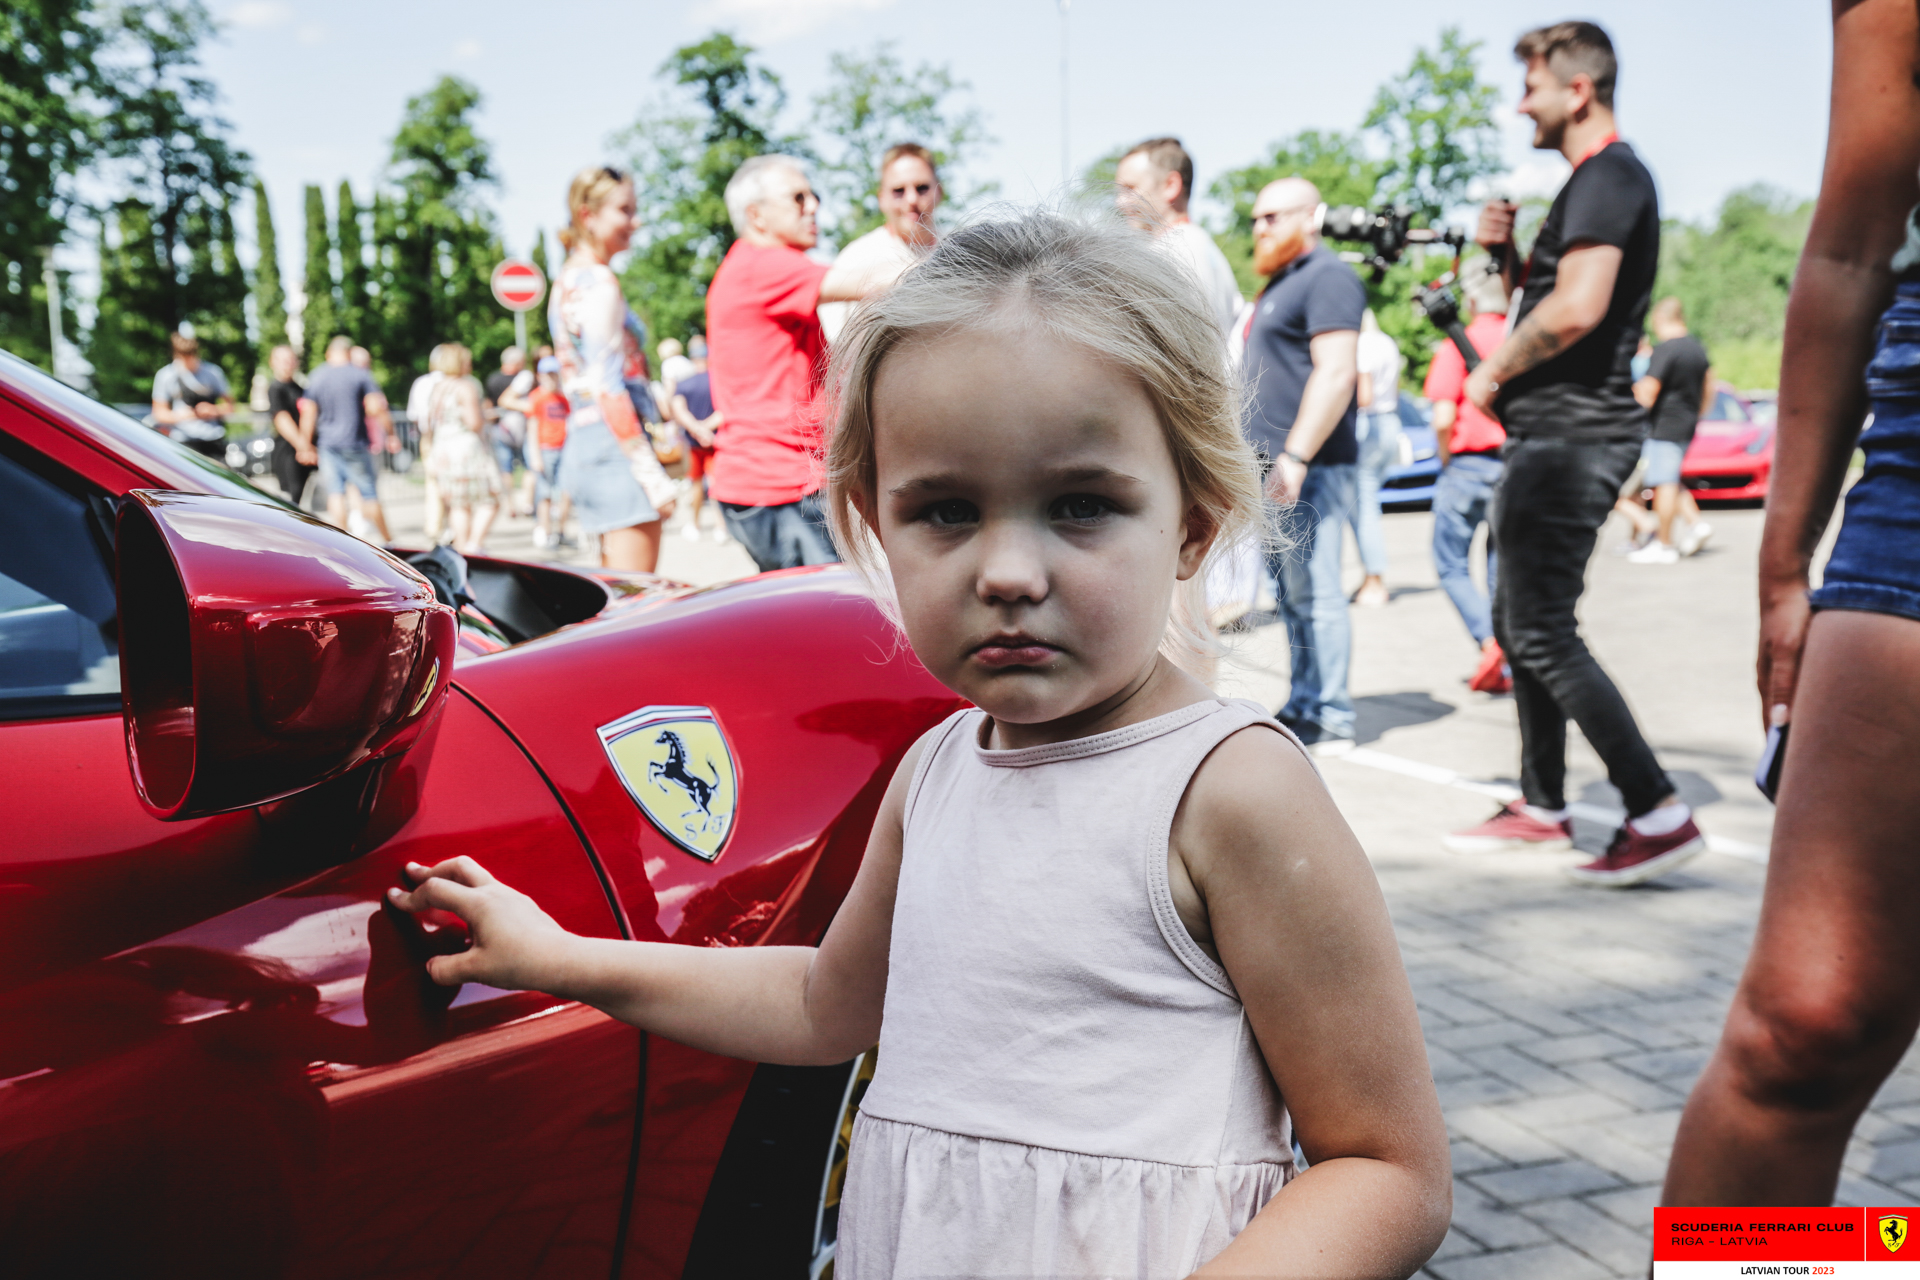 Public around the Ferraris in Sigulda.